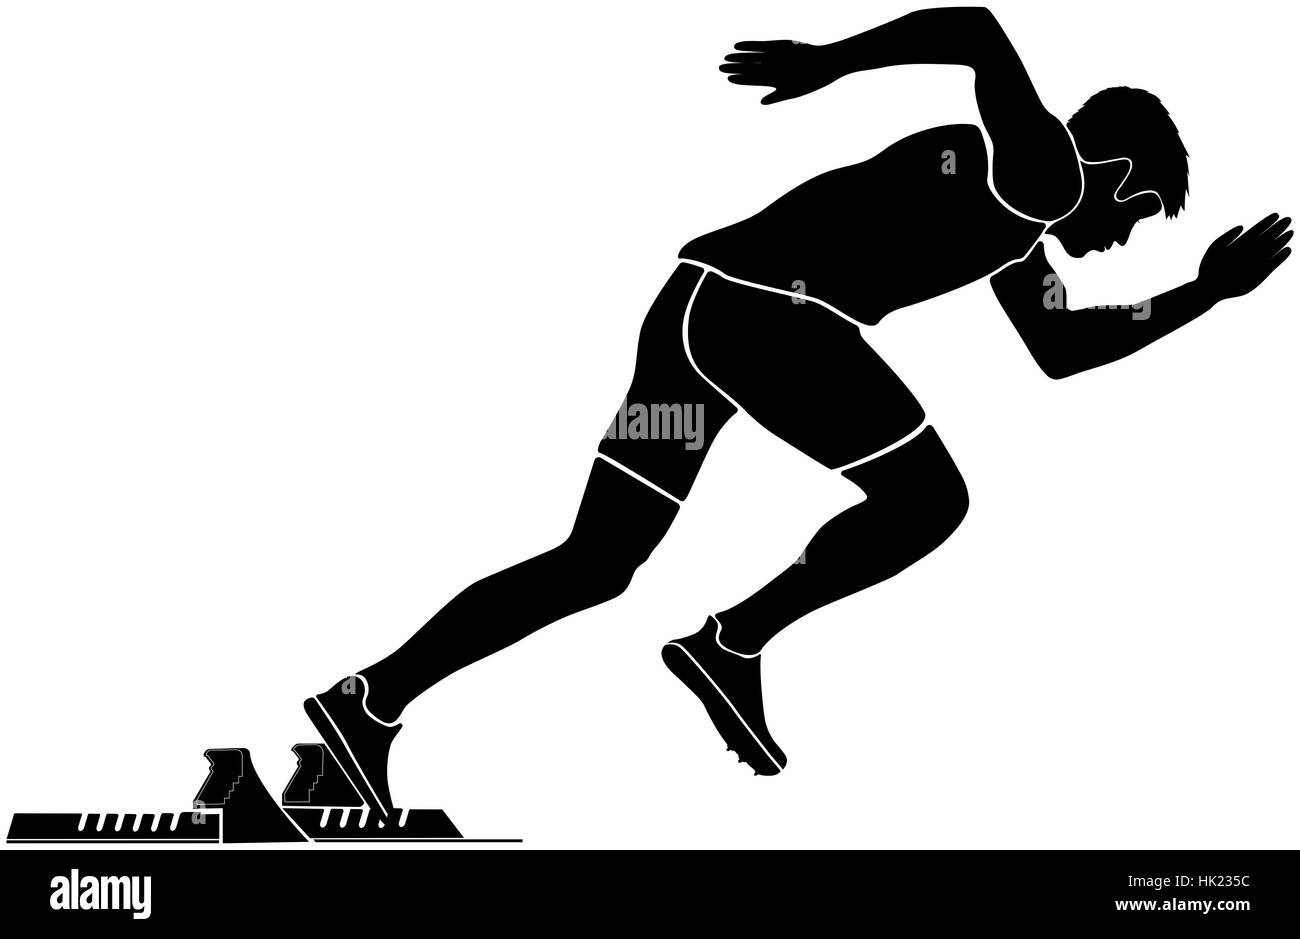 black silhouette start sprinter runner in starting blocks Stock Photo